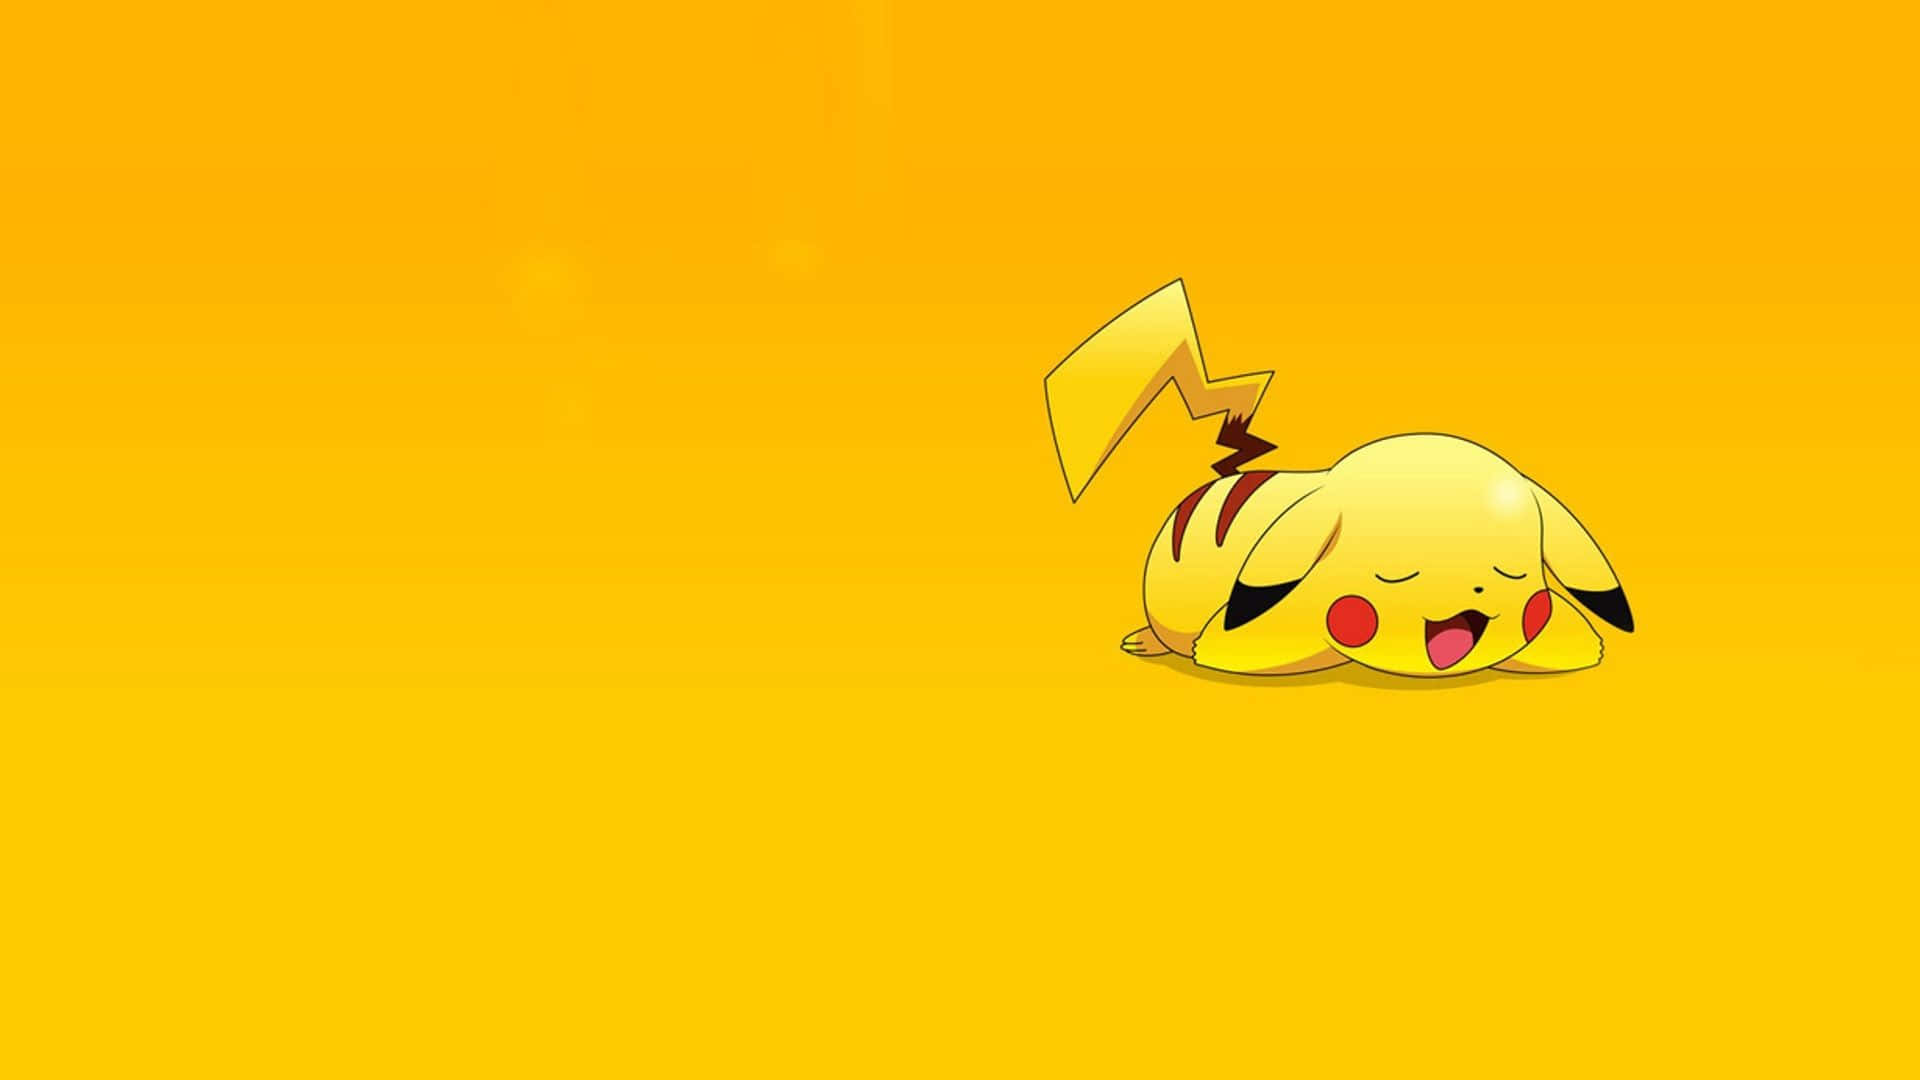 Tittapå Denna Bedårande Lilla Pikachu-bebis! Wallpaper